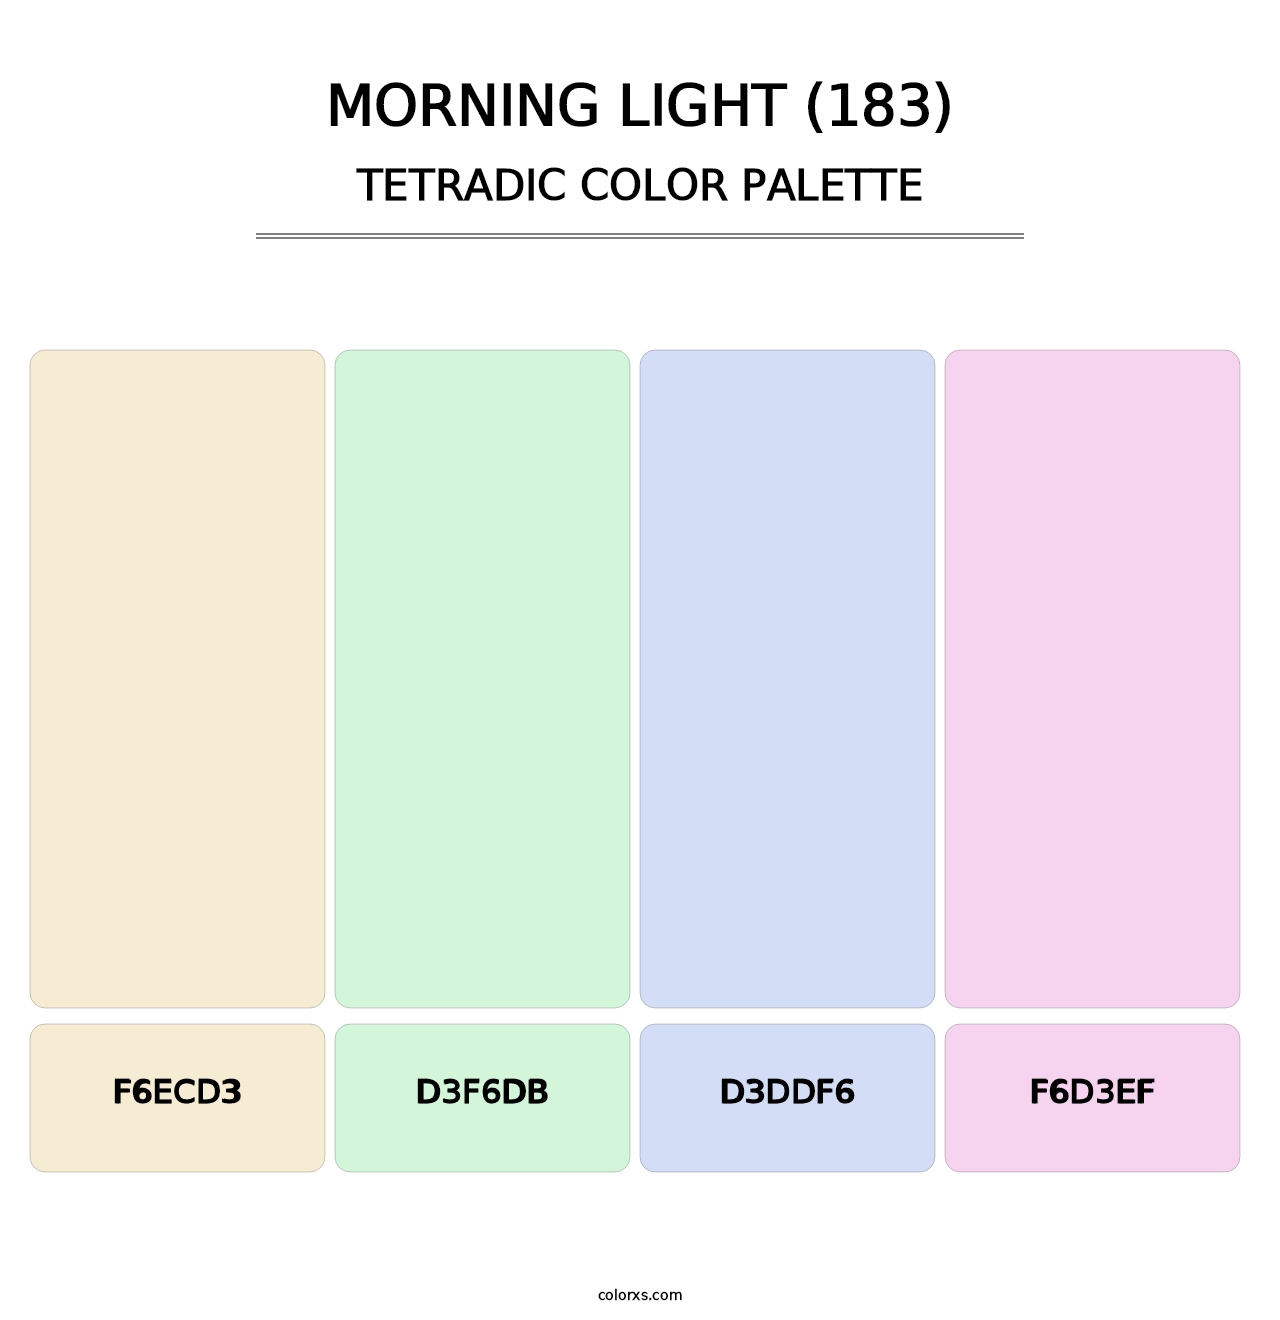 Morning Light (183) - Tetradic Color Palette